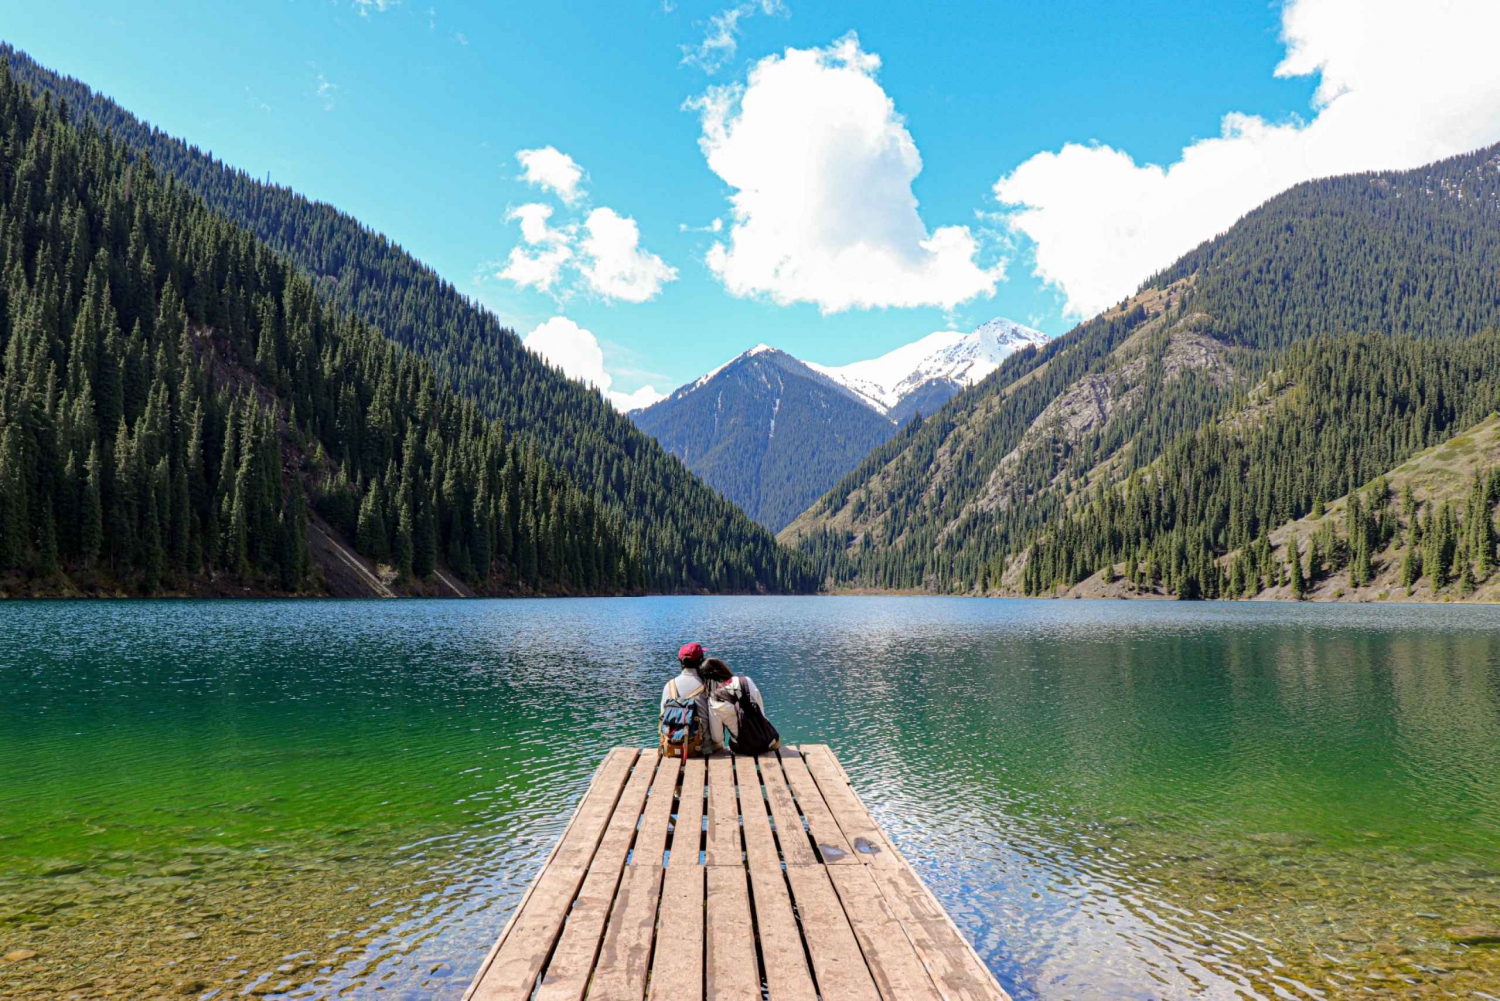 Almaty: Kolsai Lake, Kaindy Lake, and Charyn Canyon Tour